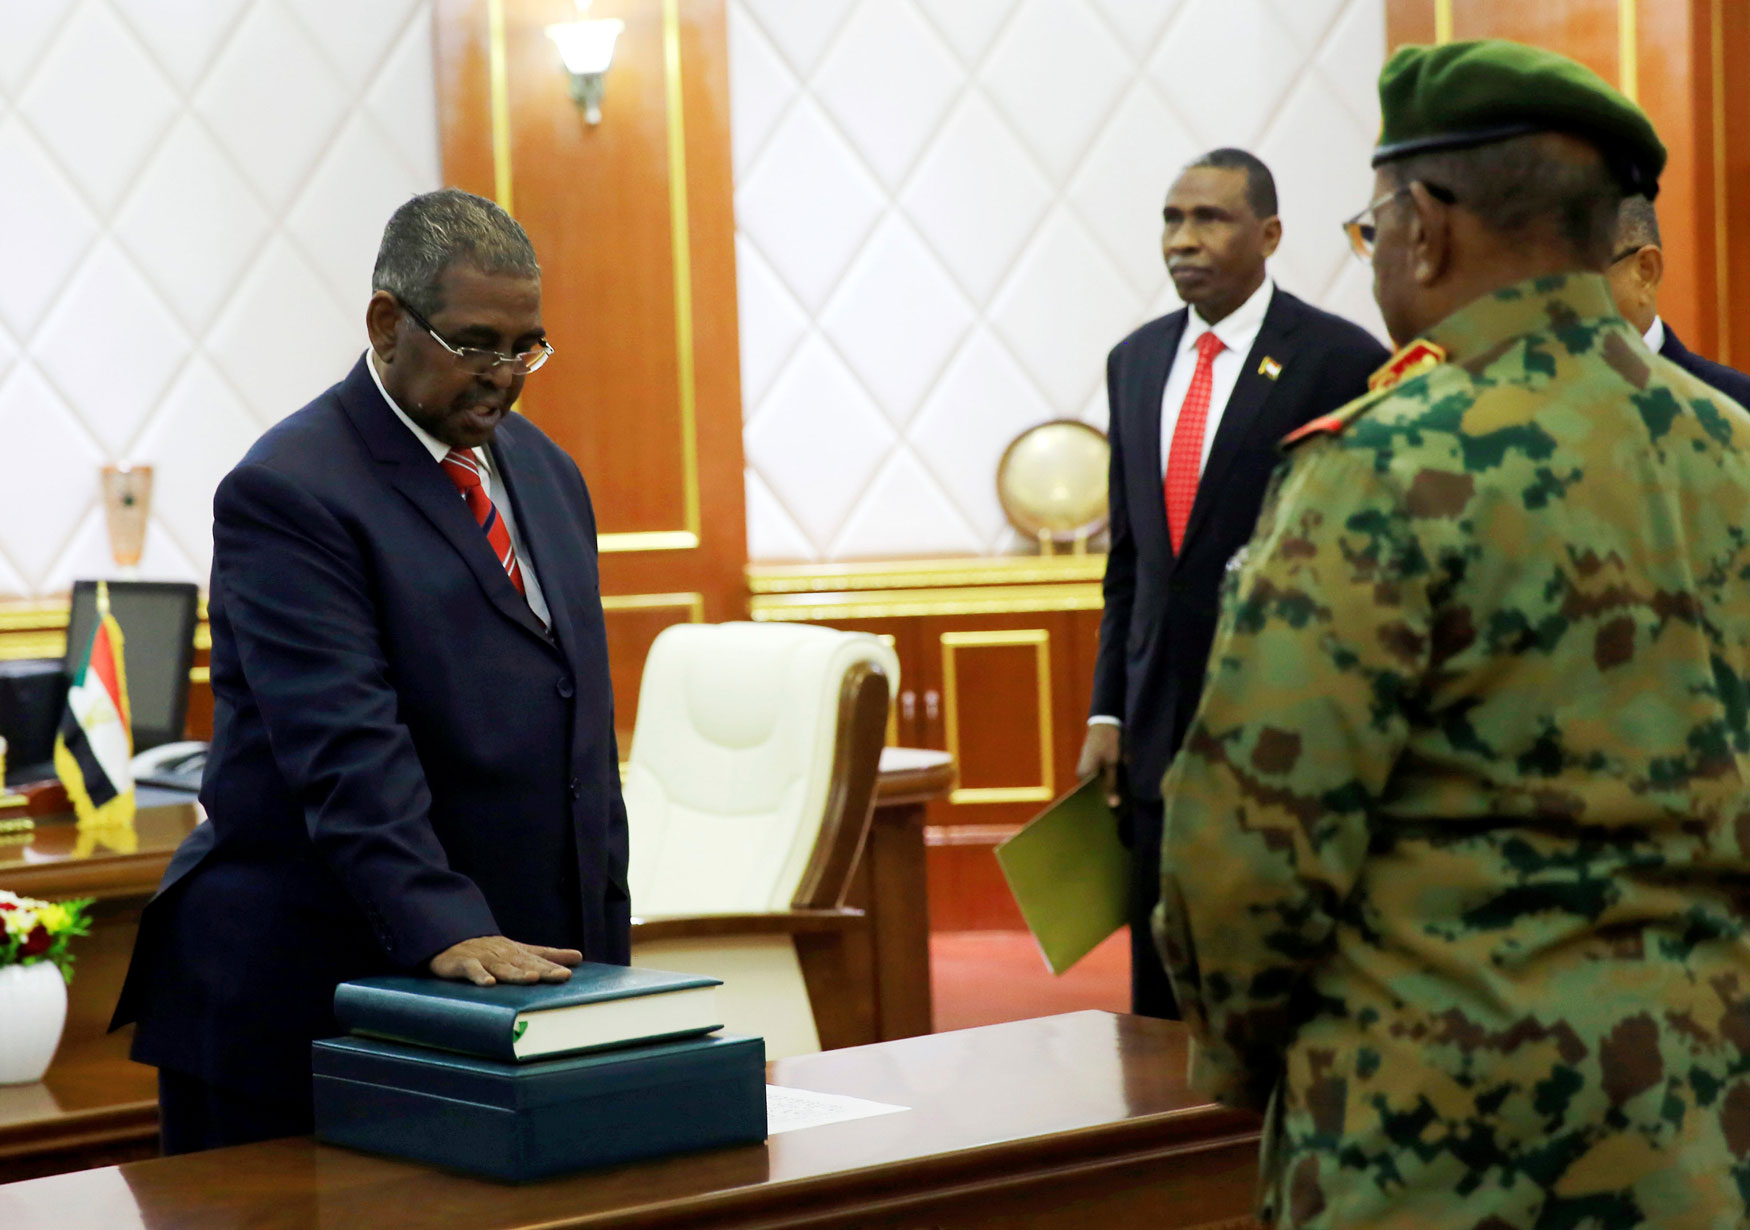 الرئيس السوداني عمر البشير خلال اداء رئيس الوزراء محمد طاهر أيلا، اليمين الدستورية